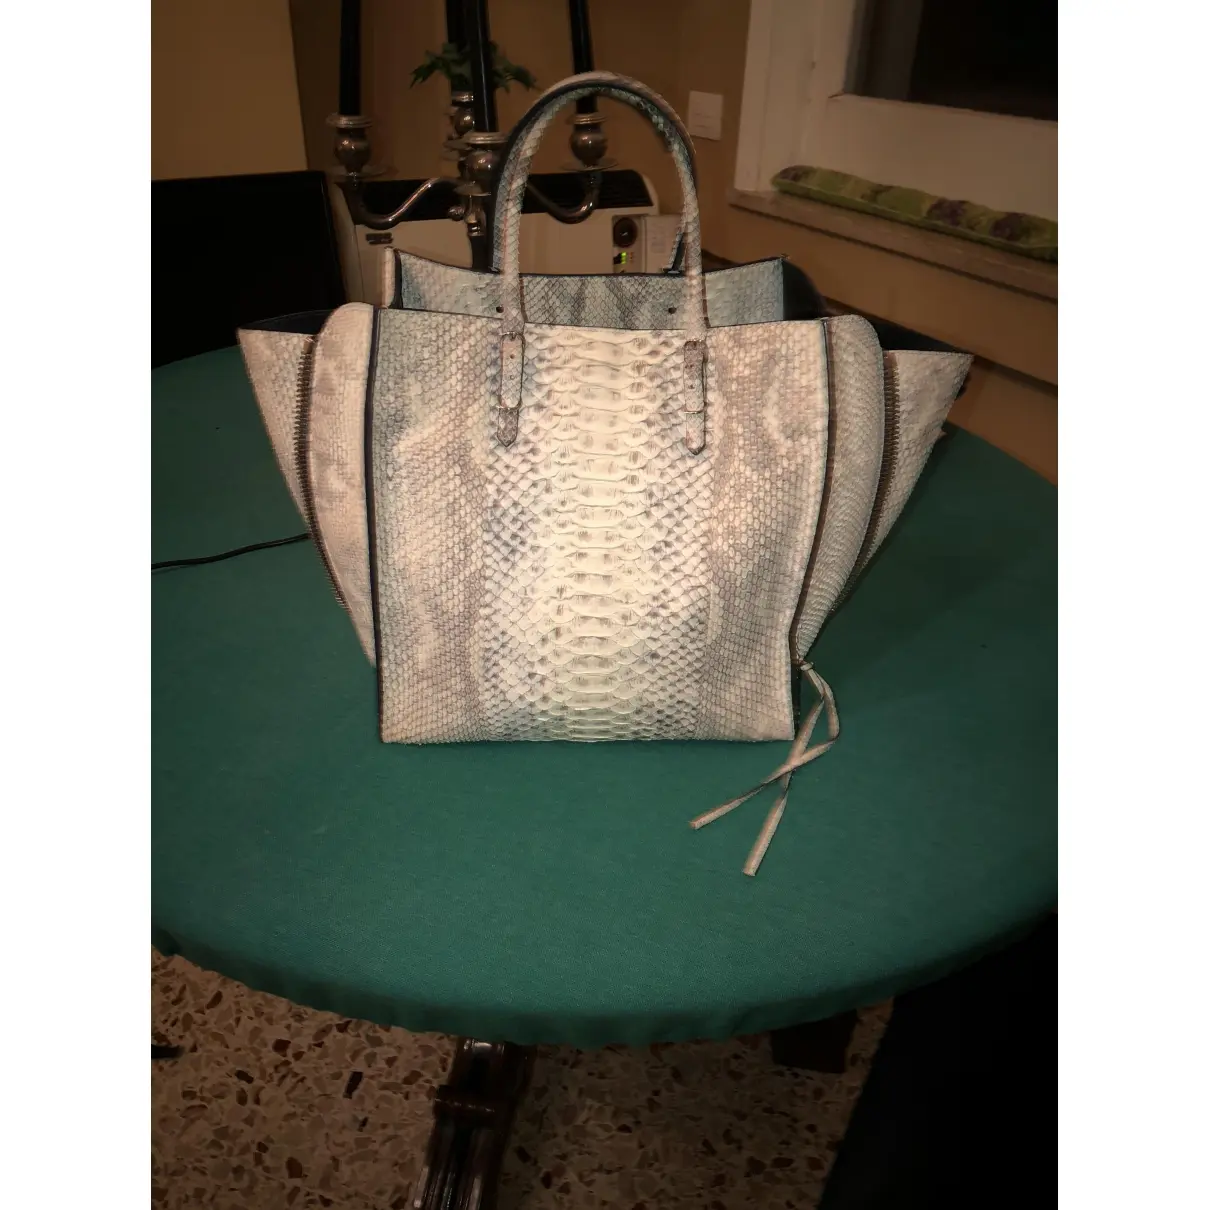 Balenciaga Python handbag for sale